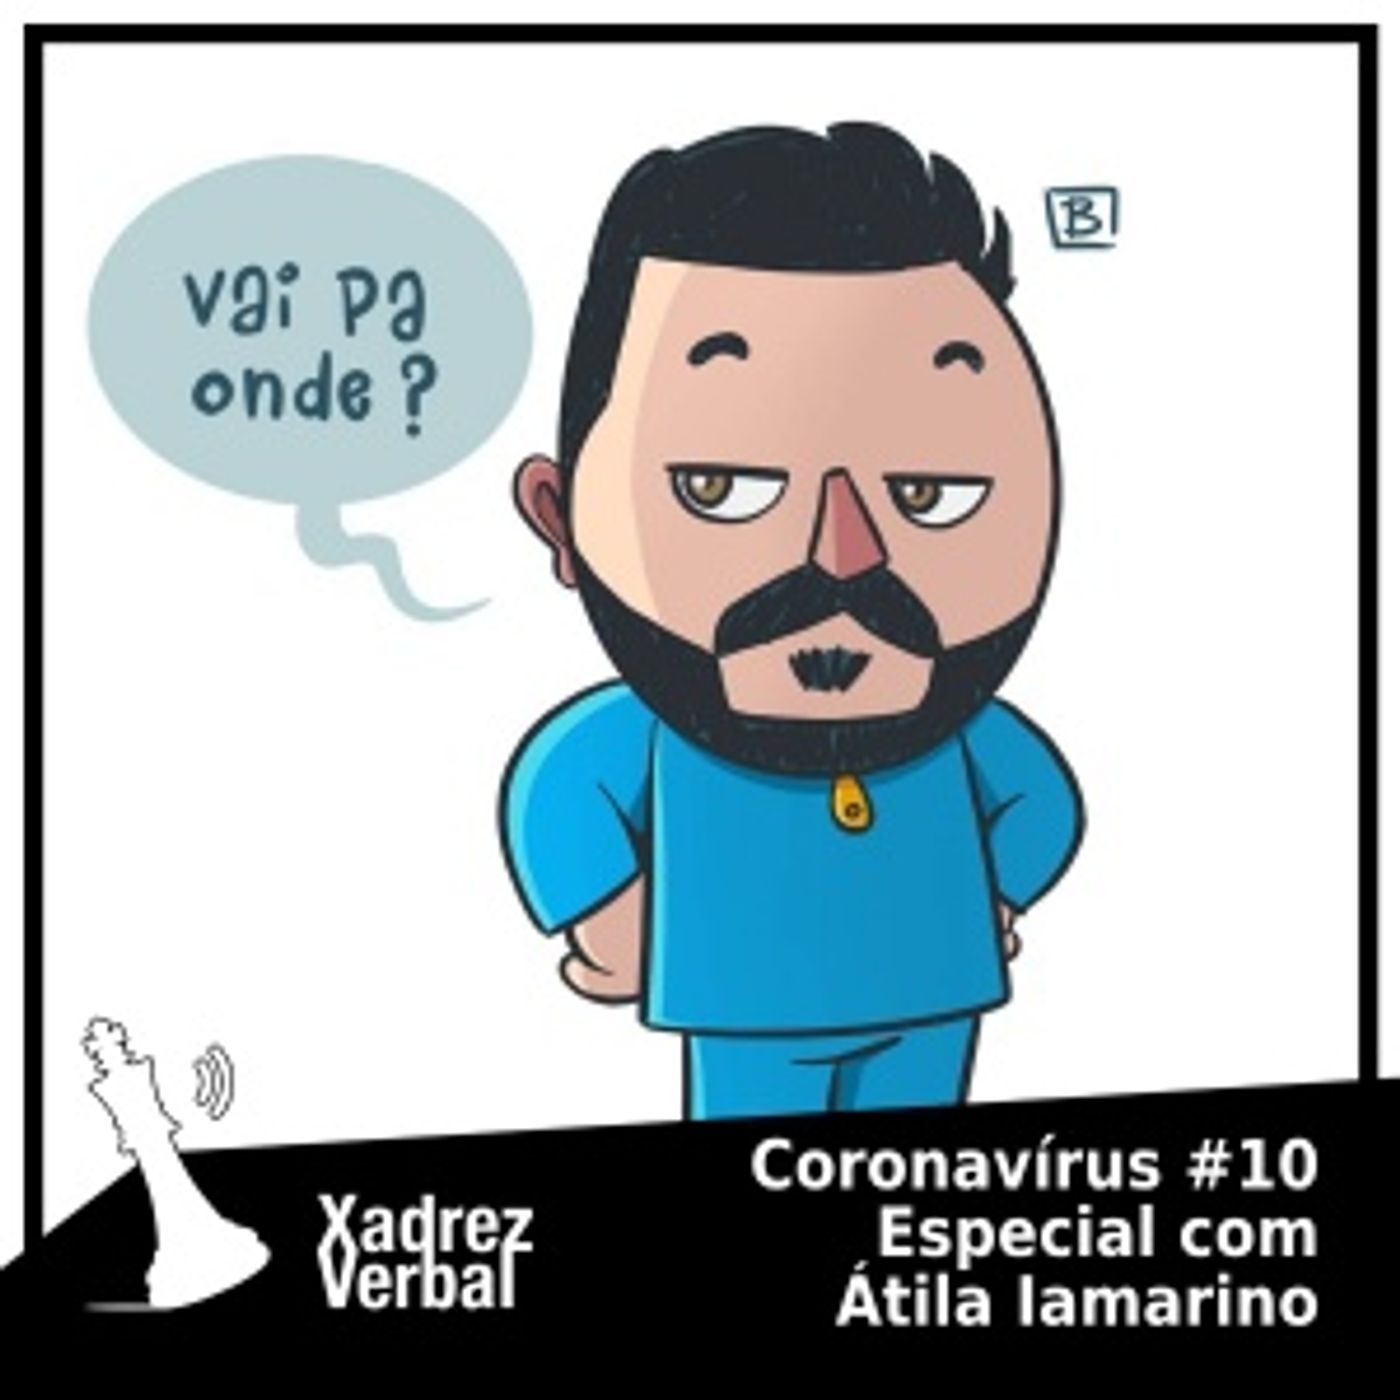 Especial Coronavírus #10